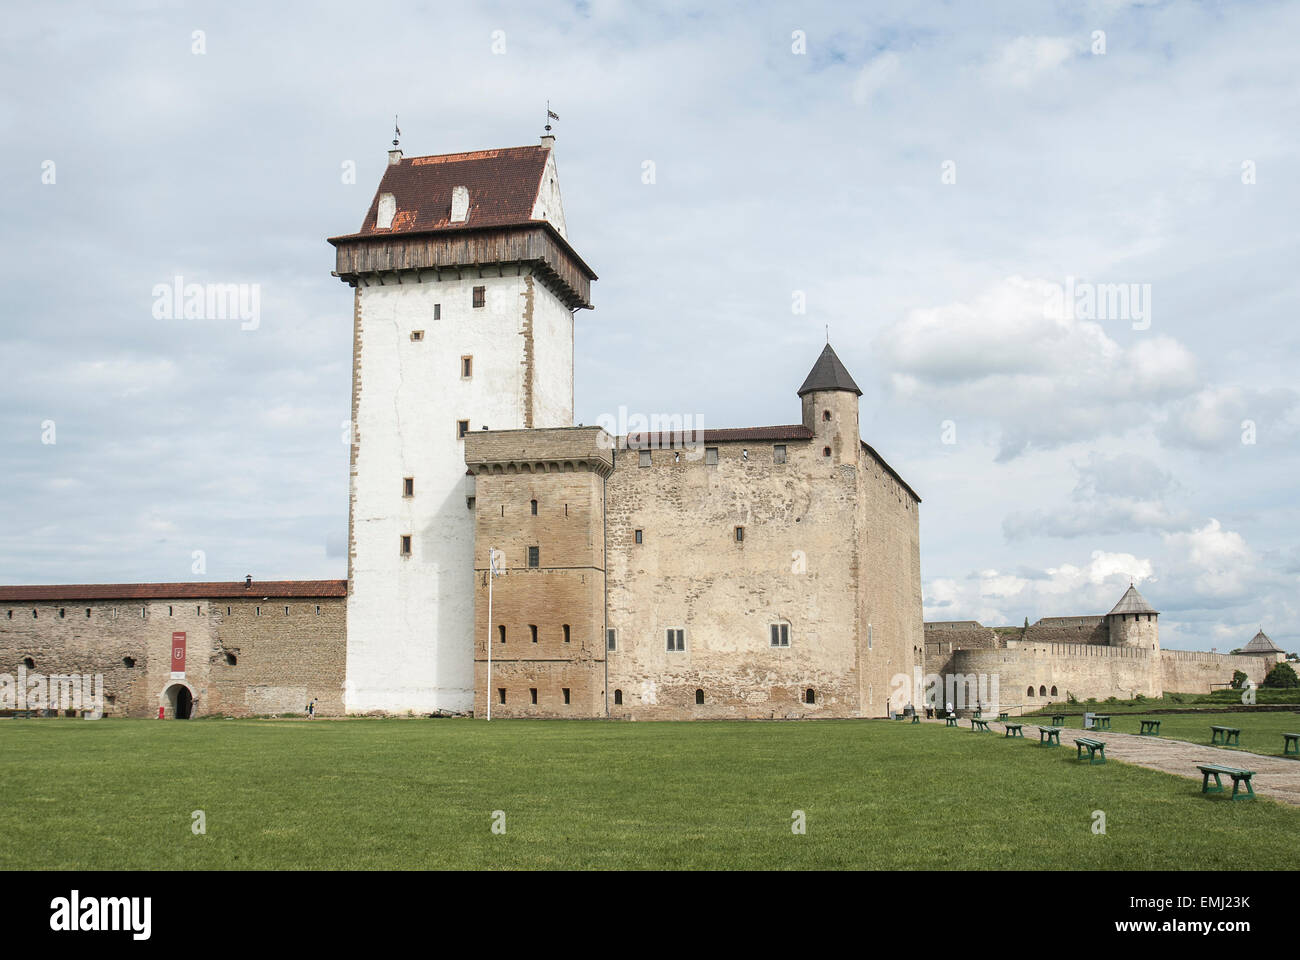 Dans le château Hermanns ville Narva en Estonie. Un château en pierre et une grande tour blanche avec un toit. Ciel nuageux et l'herbe verte. Banque D'Images